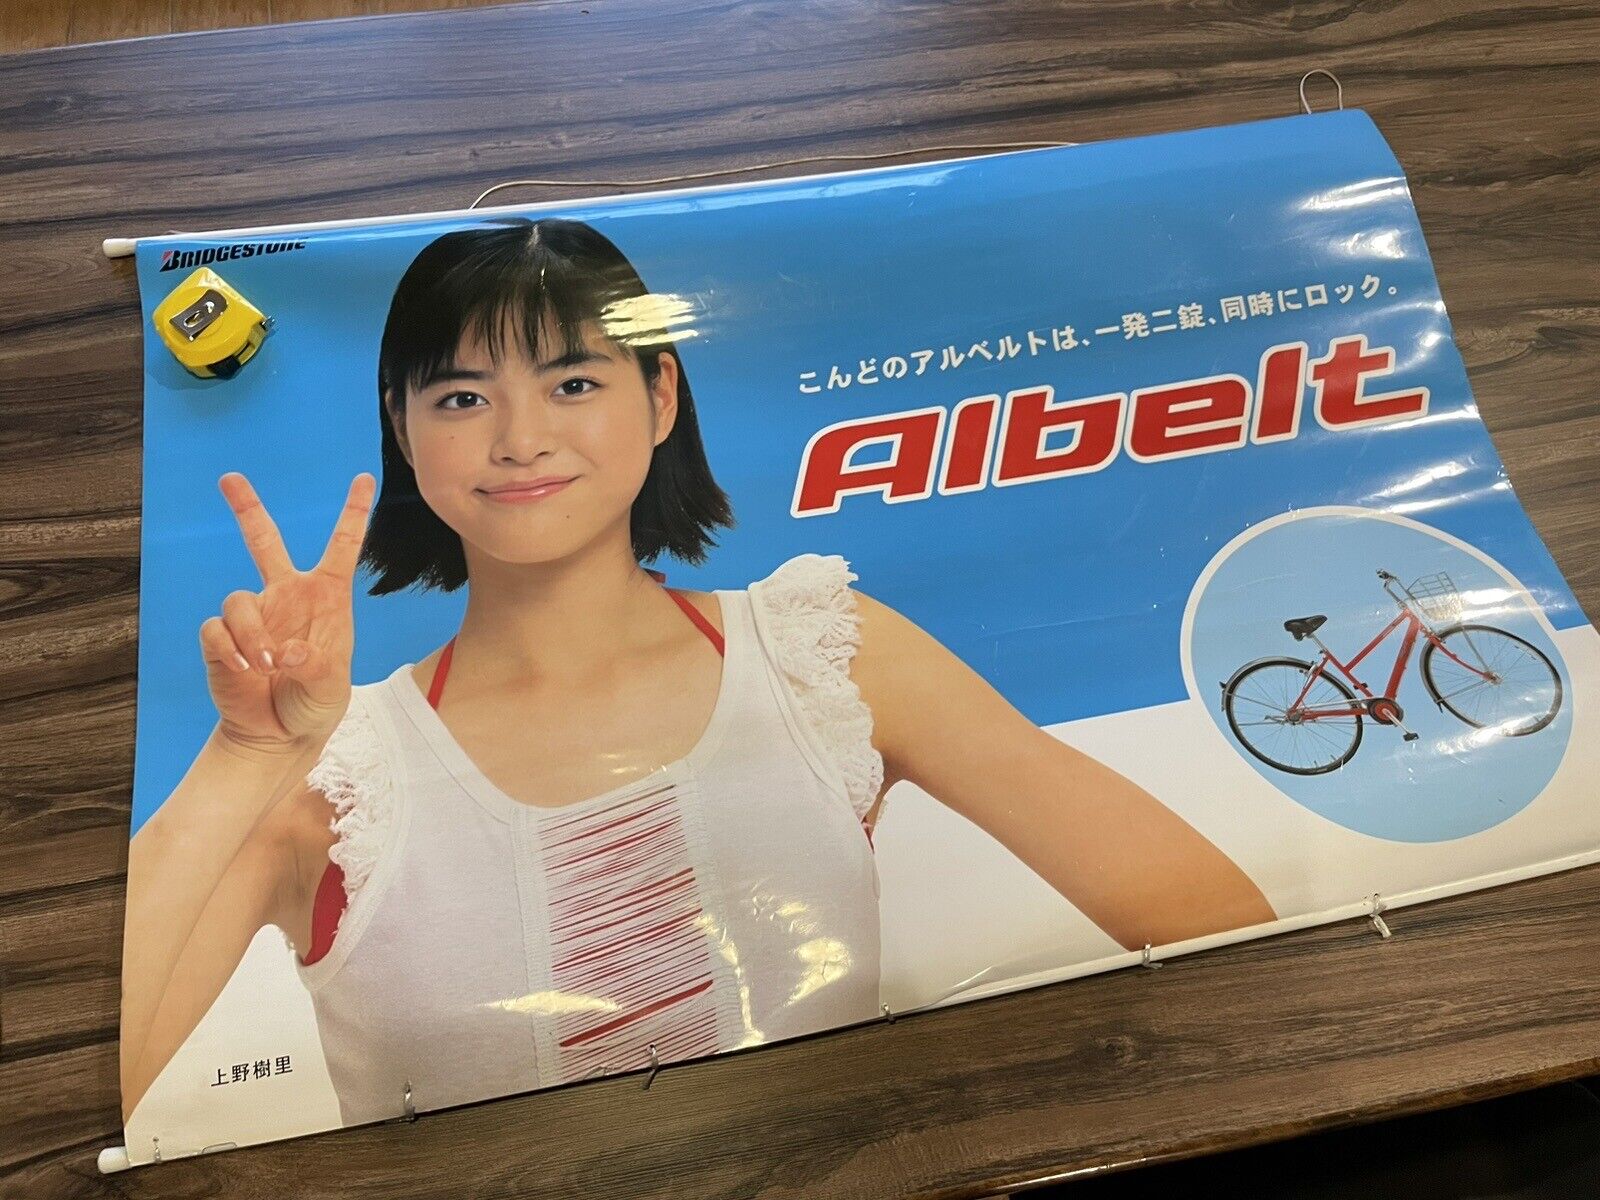 Vintage Bridgestone Albelt Japan Bicycle Advertising Poster Window Display